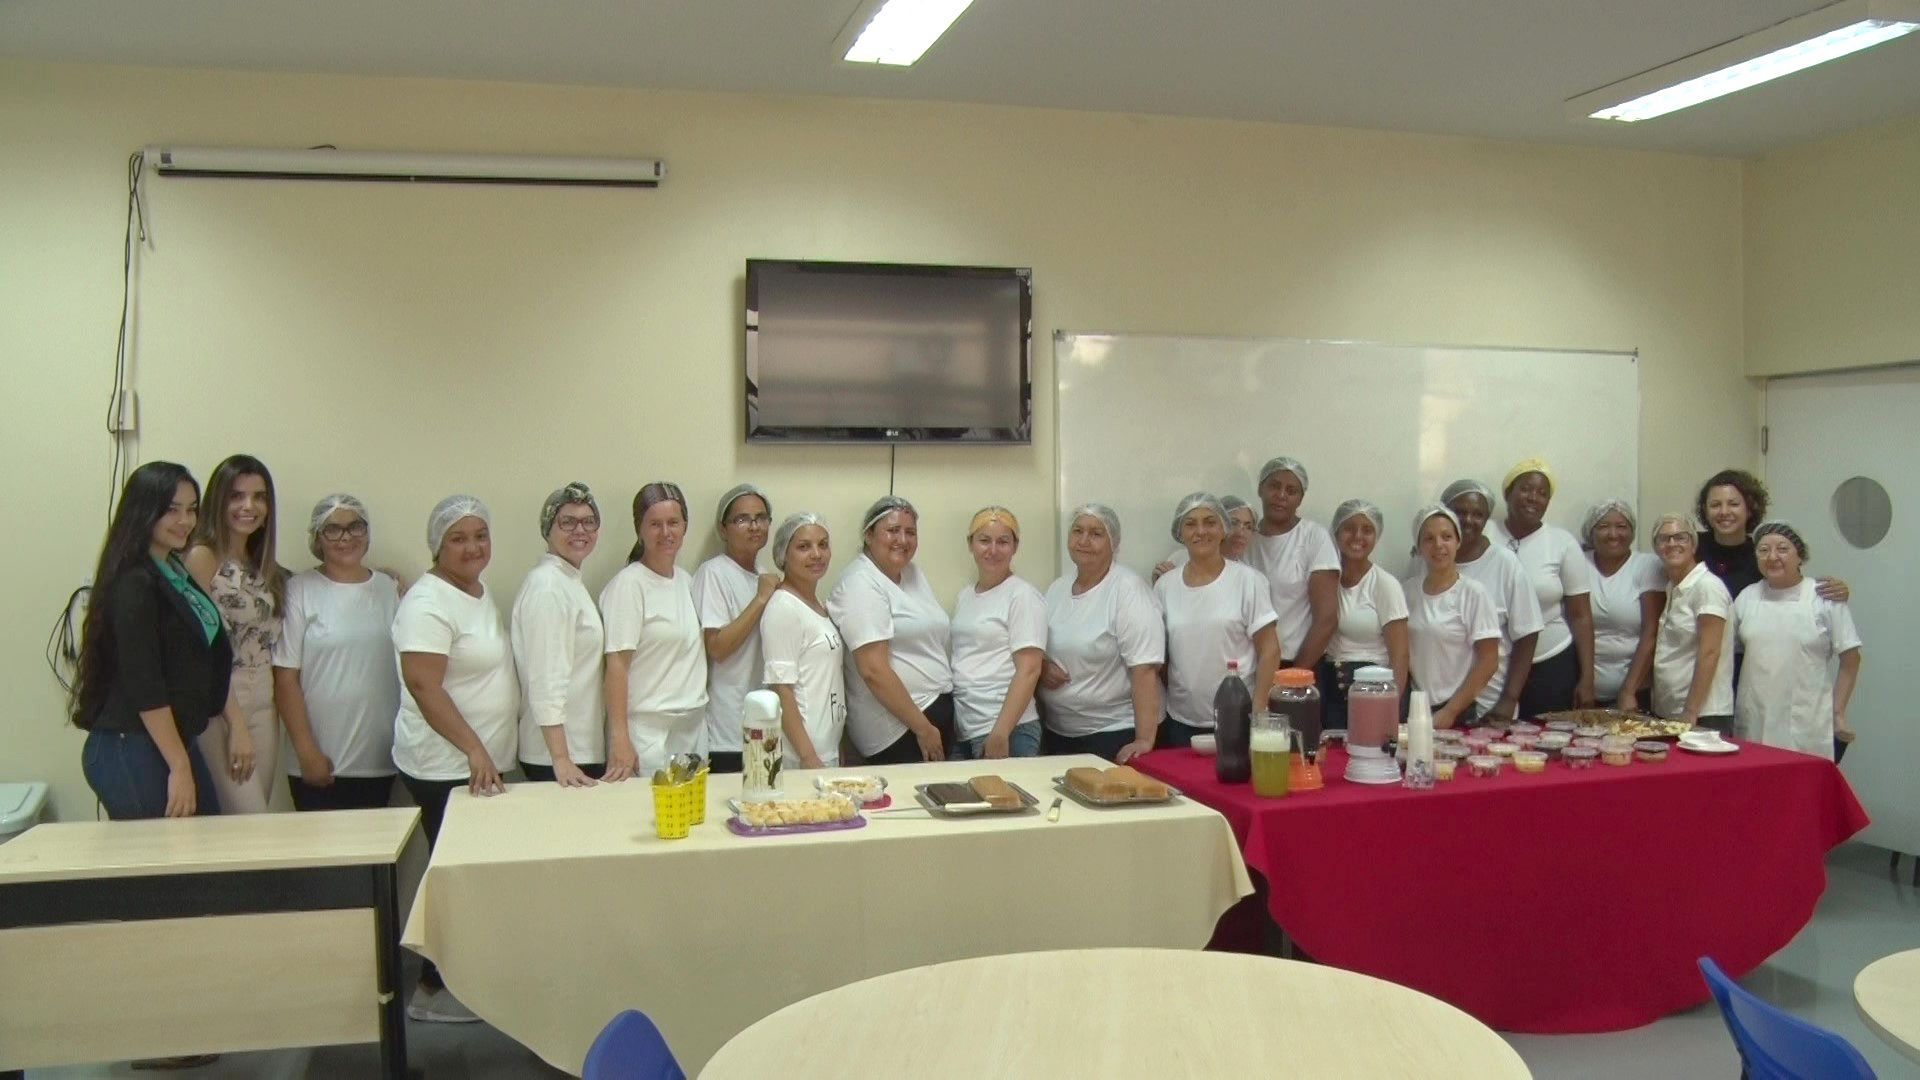 Turma reunida durante o encerramento da aula de "Elaboração de produtos básicos culinários", no laboratório Gastronômico do Câmpus Goiânia